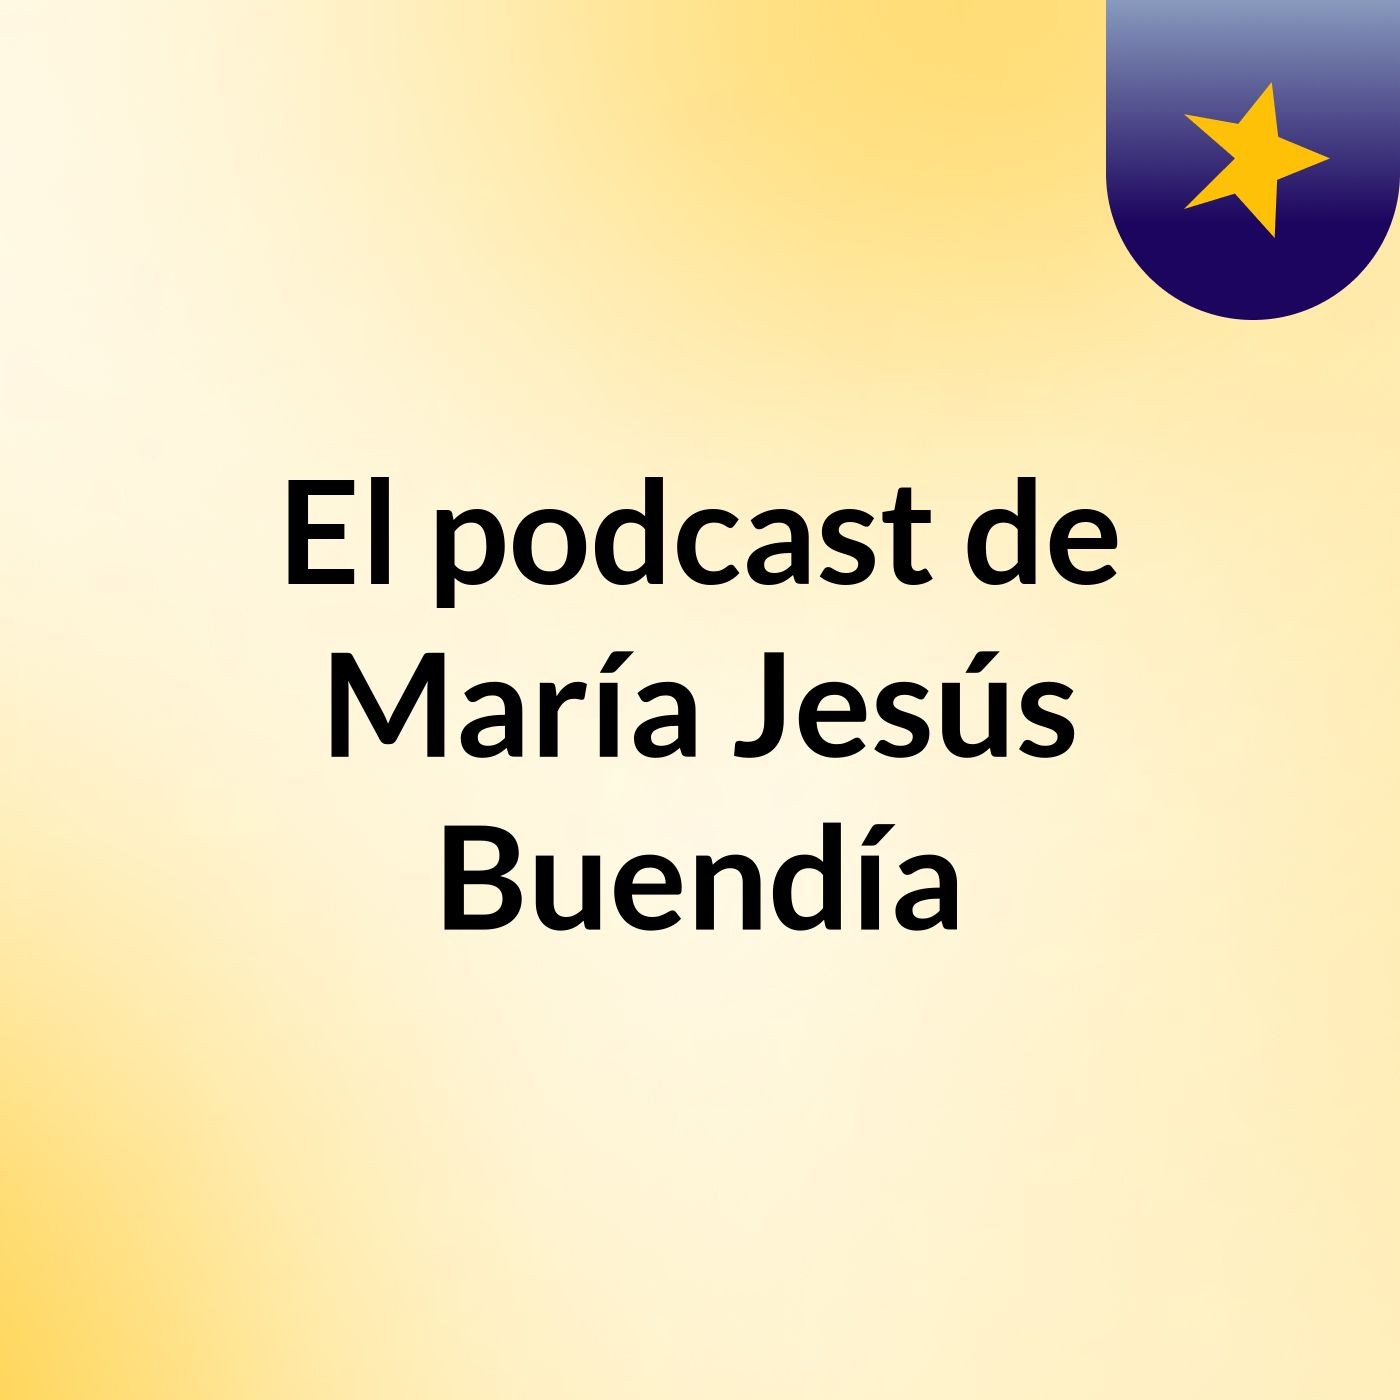 Episodio 3 - El podcast de María Jesús Buendía